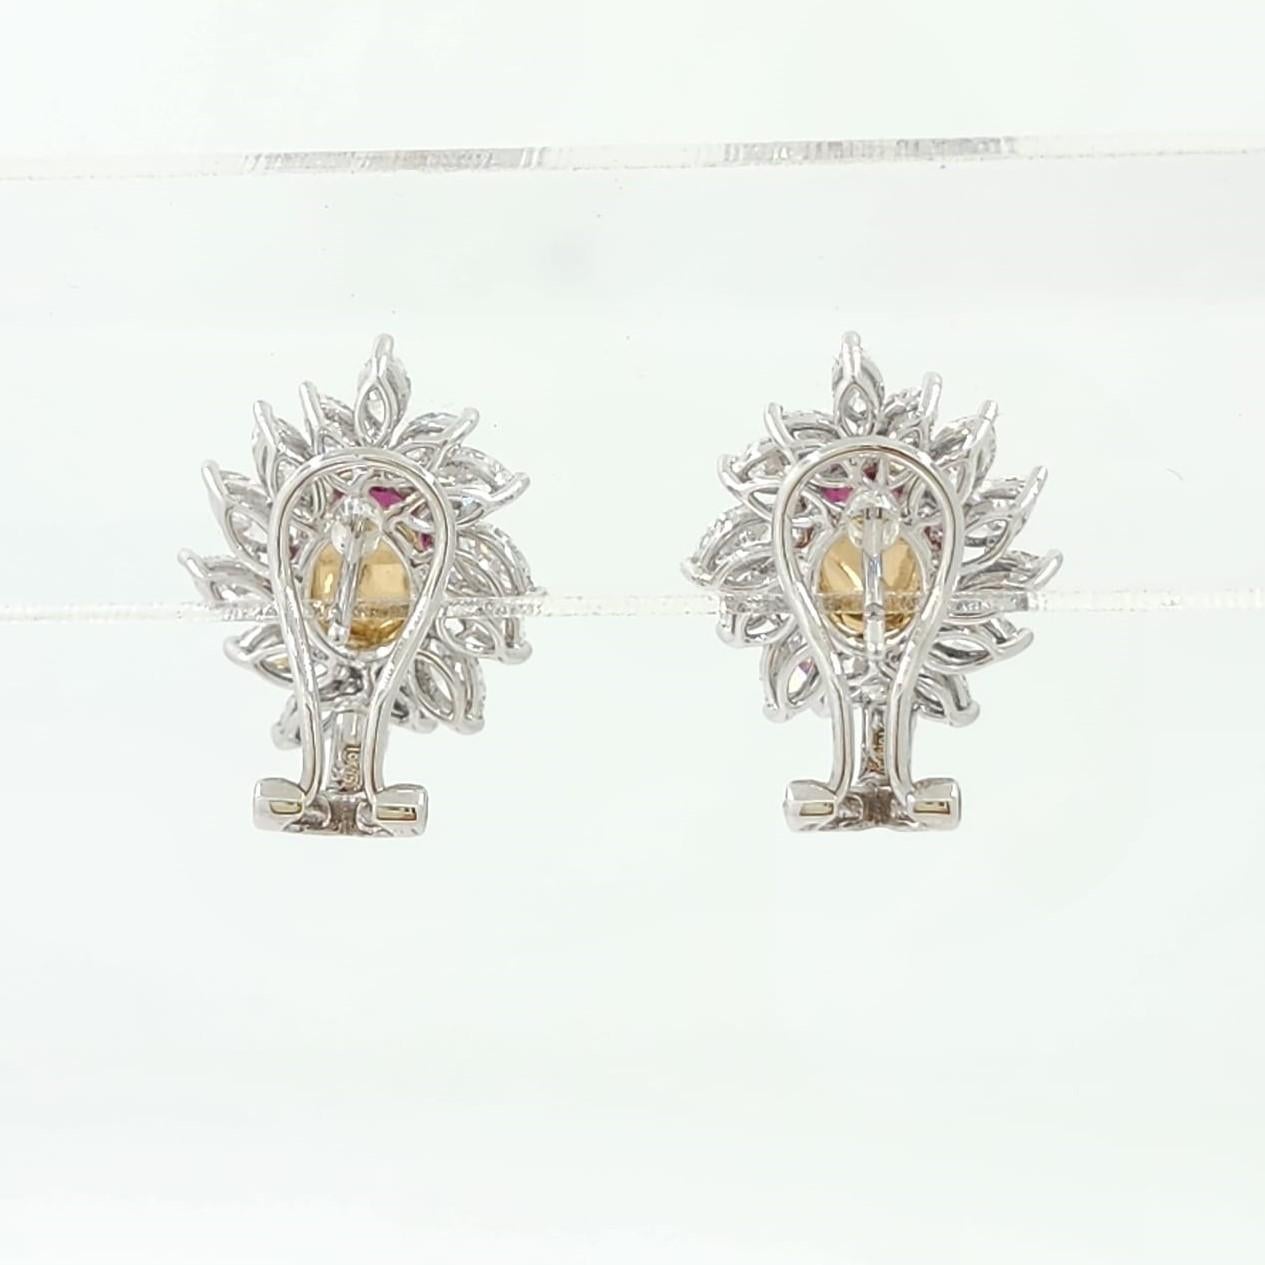 Oval Cut GIA Certified 2.98 Carat Burma Ruby Diamond Earrings in 18K White Gold For Sale